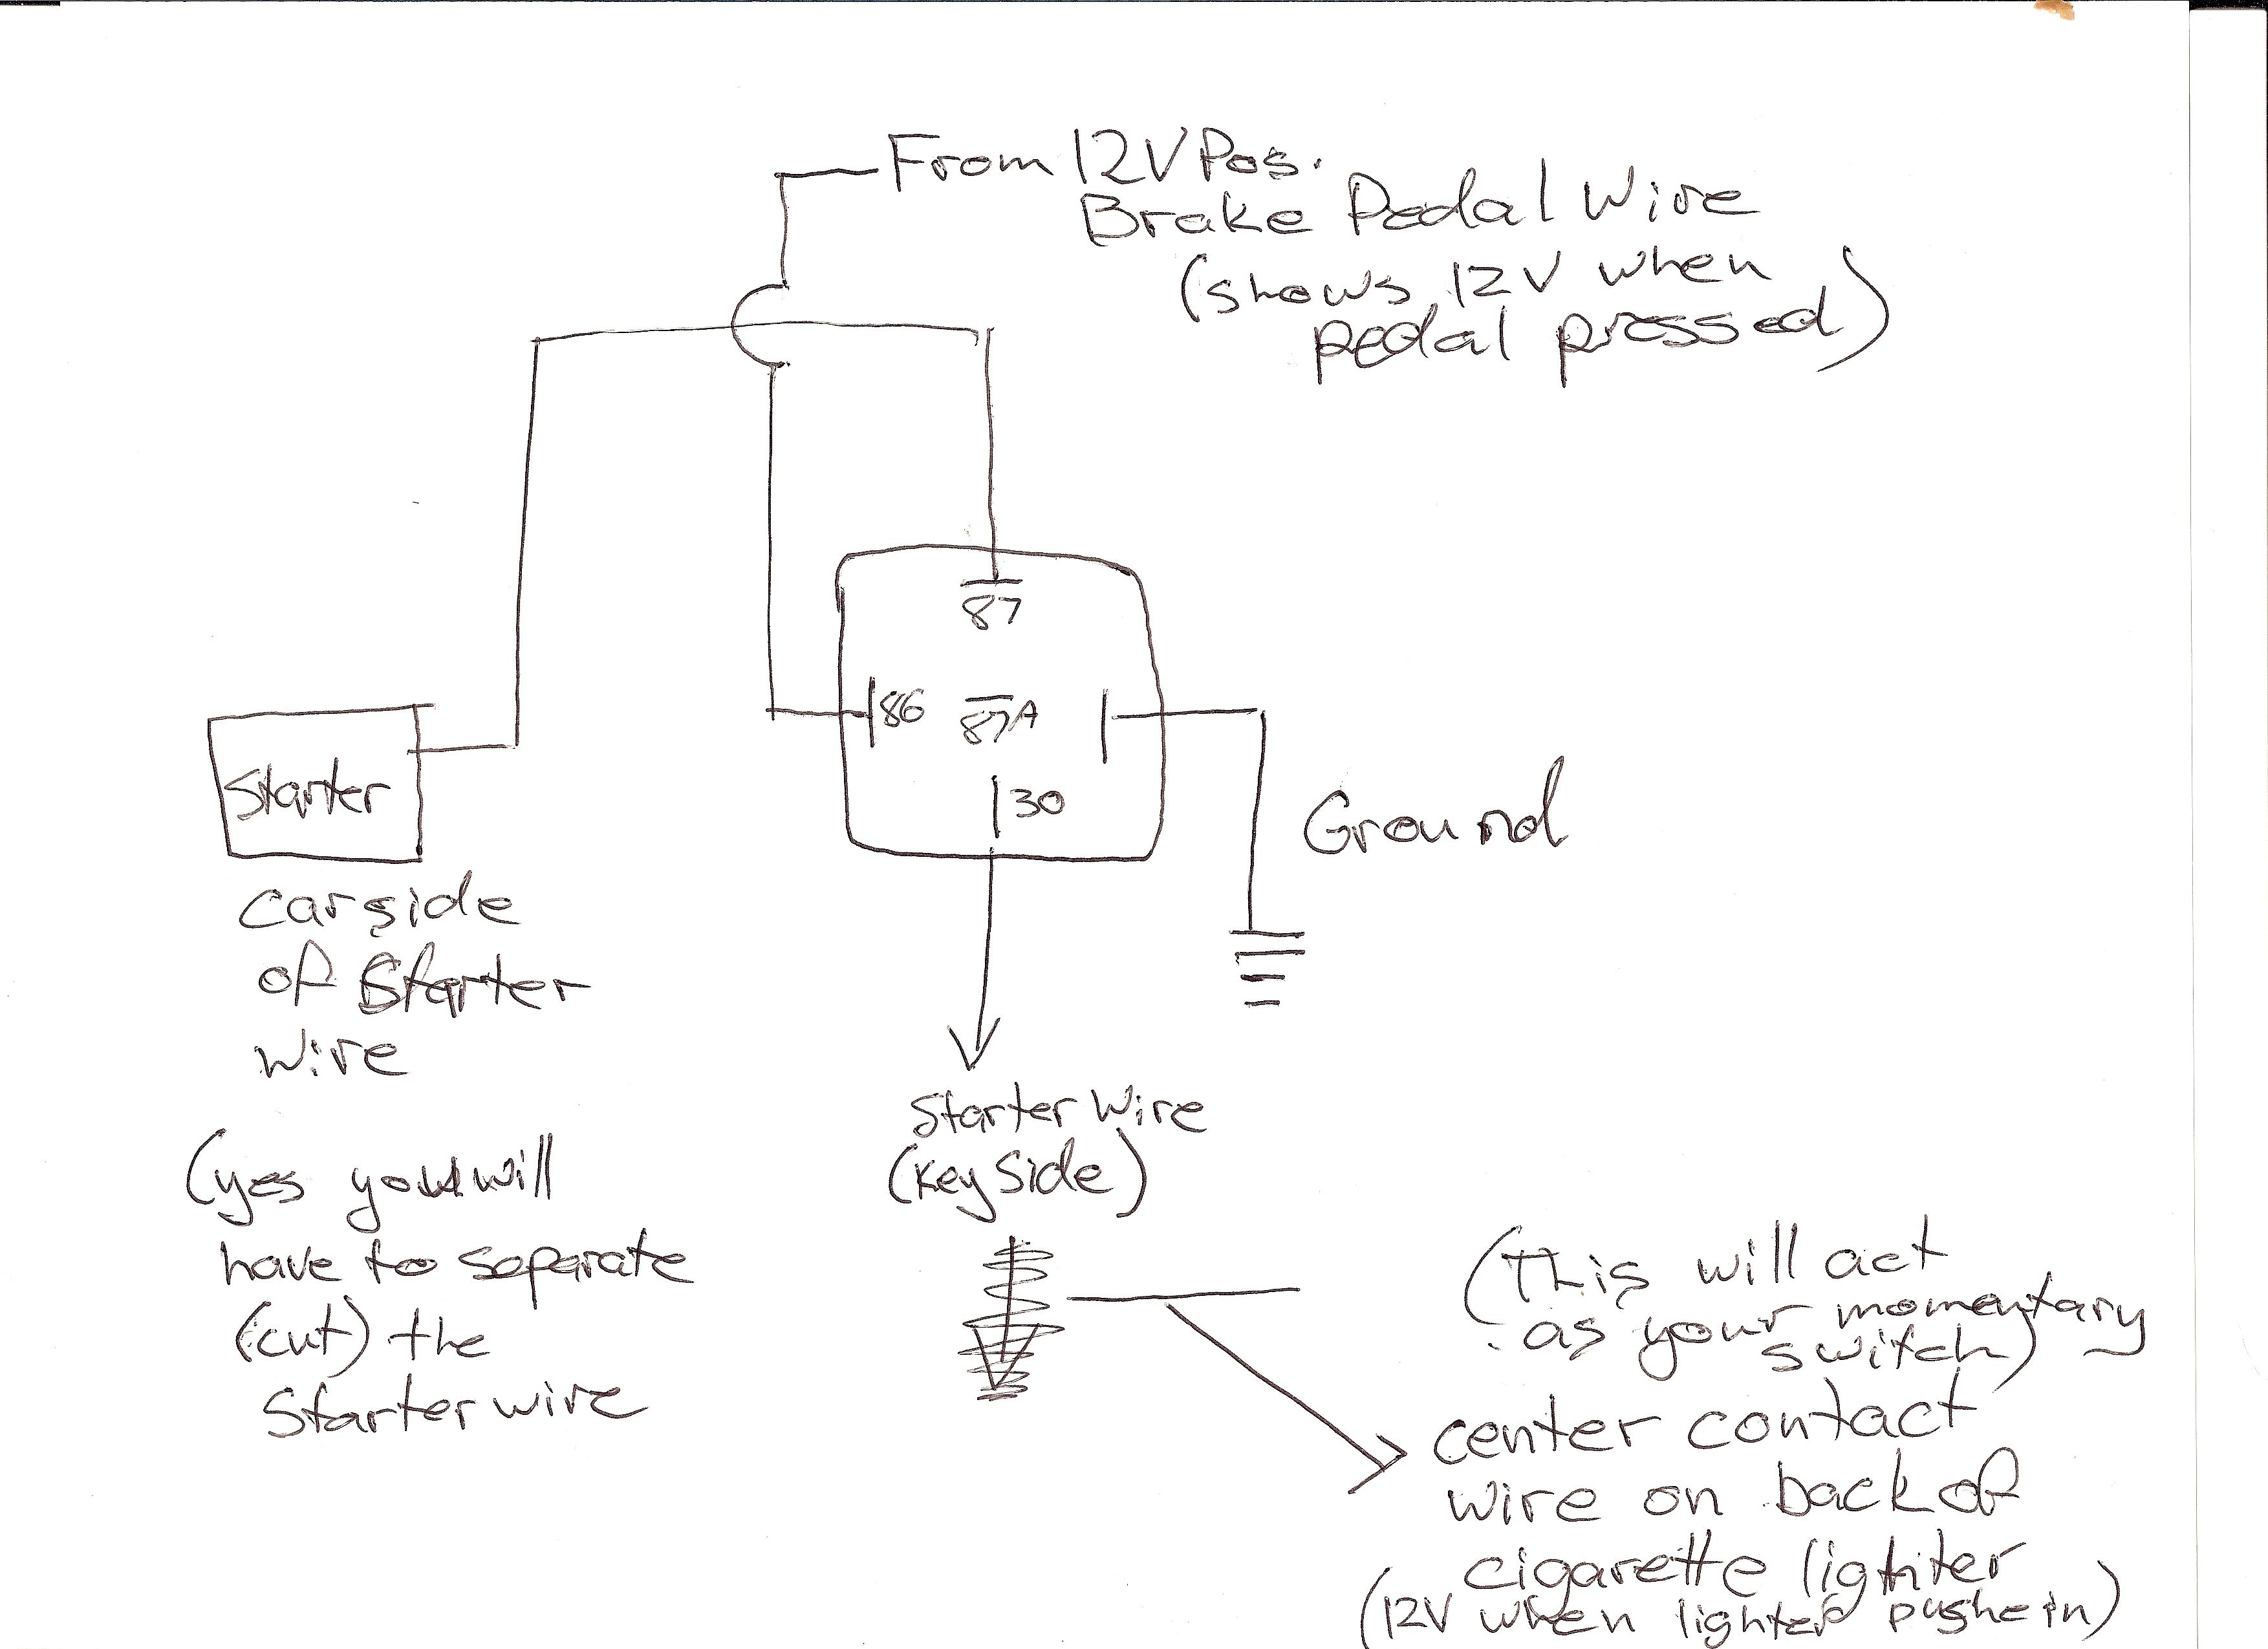 dynamco wiring diagram